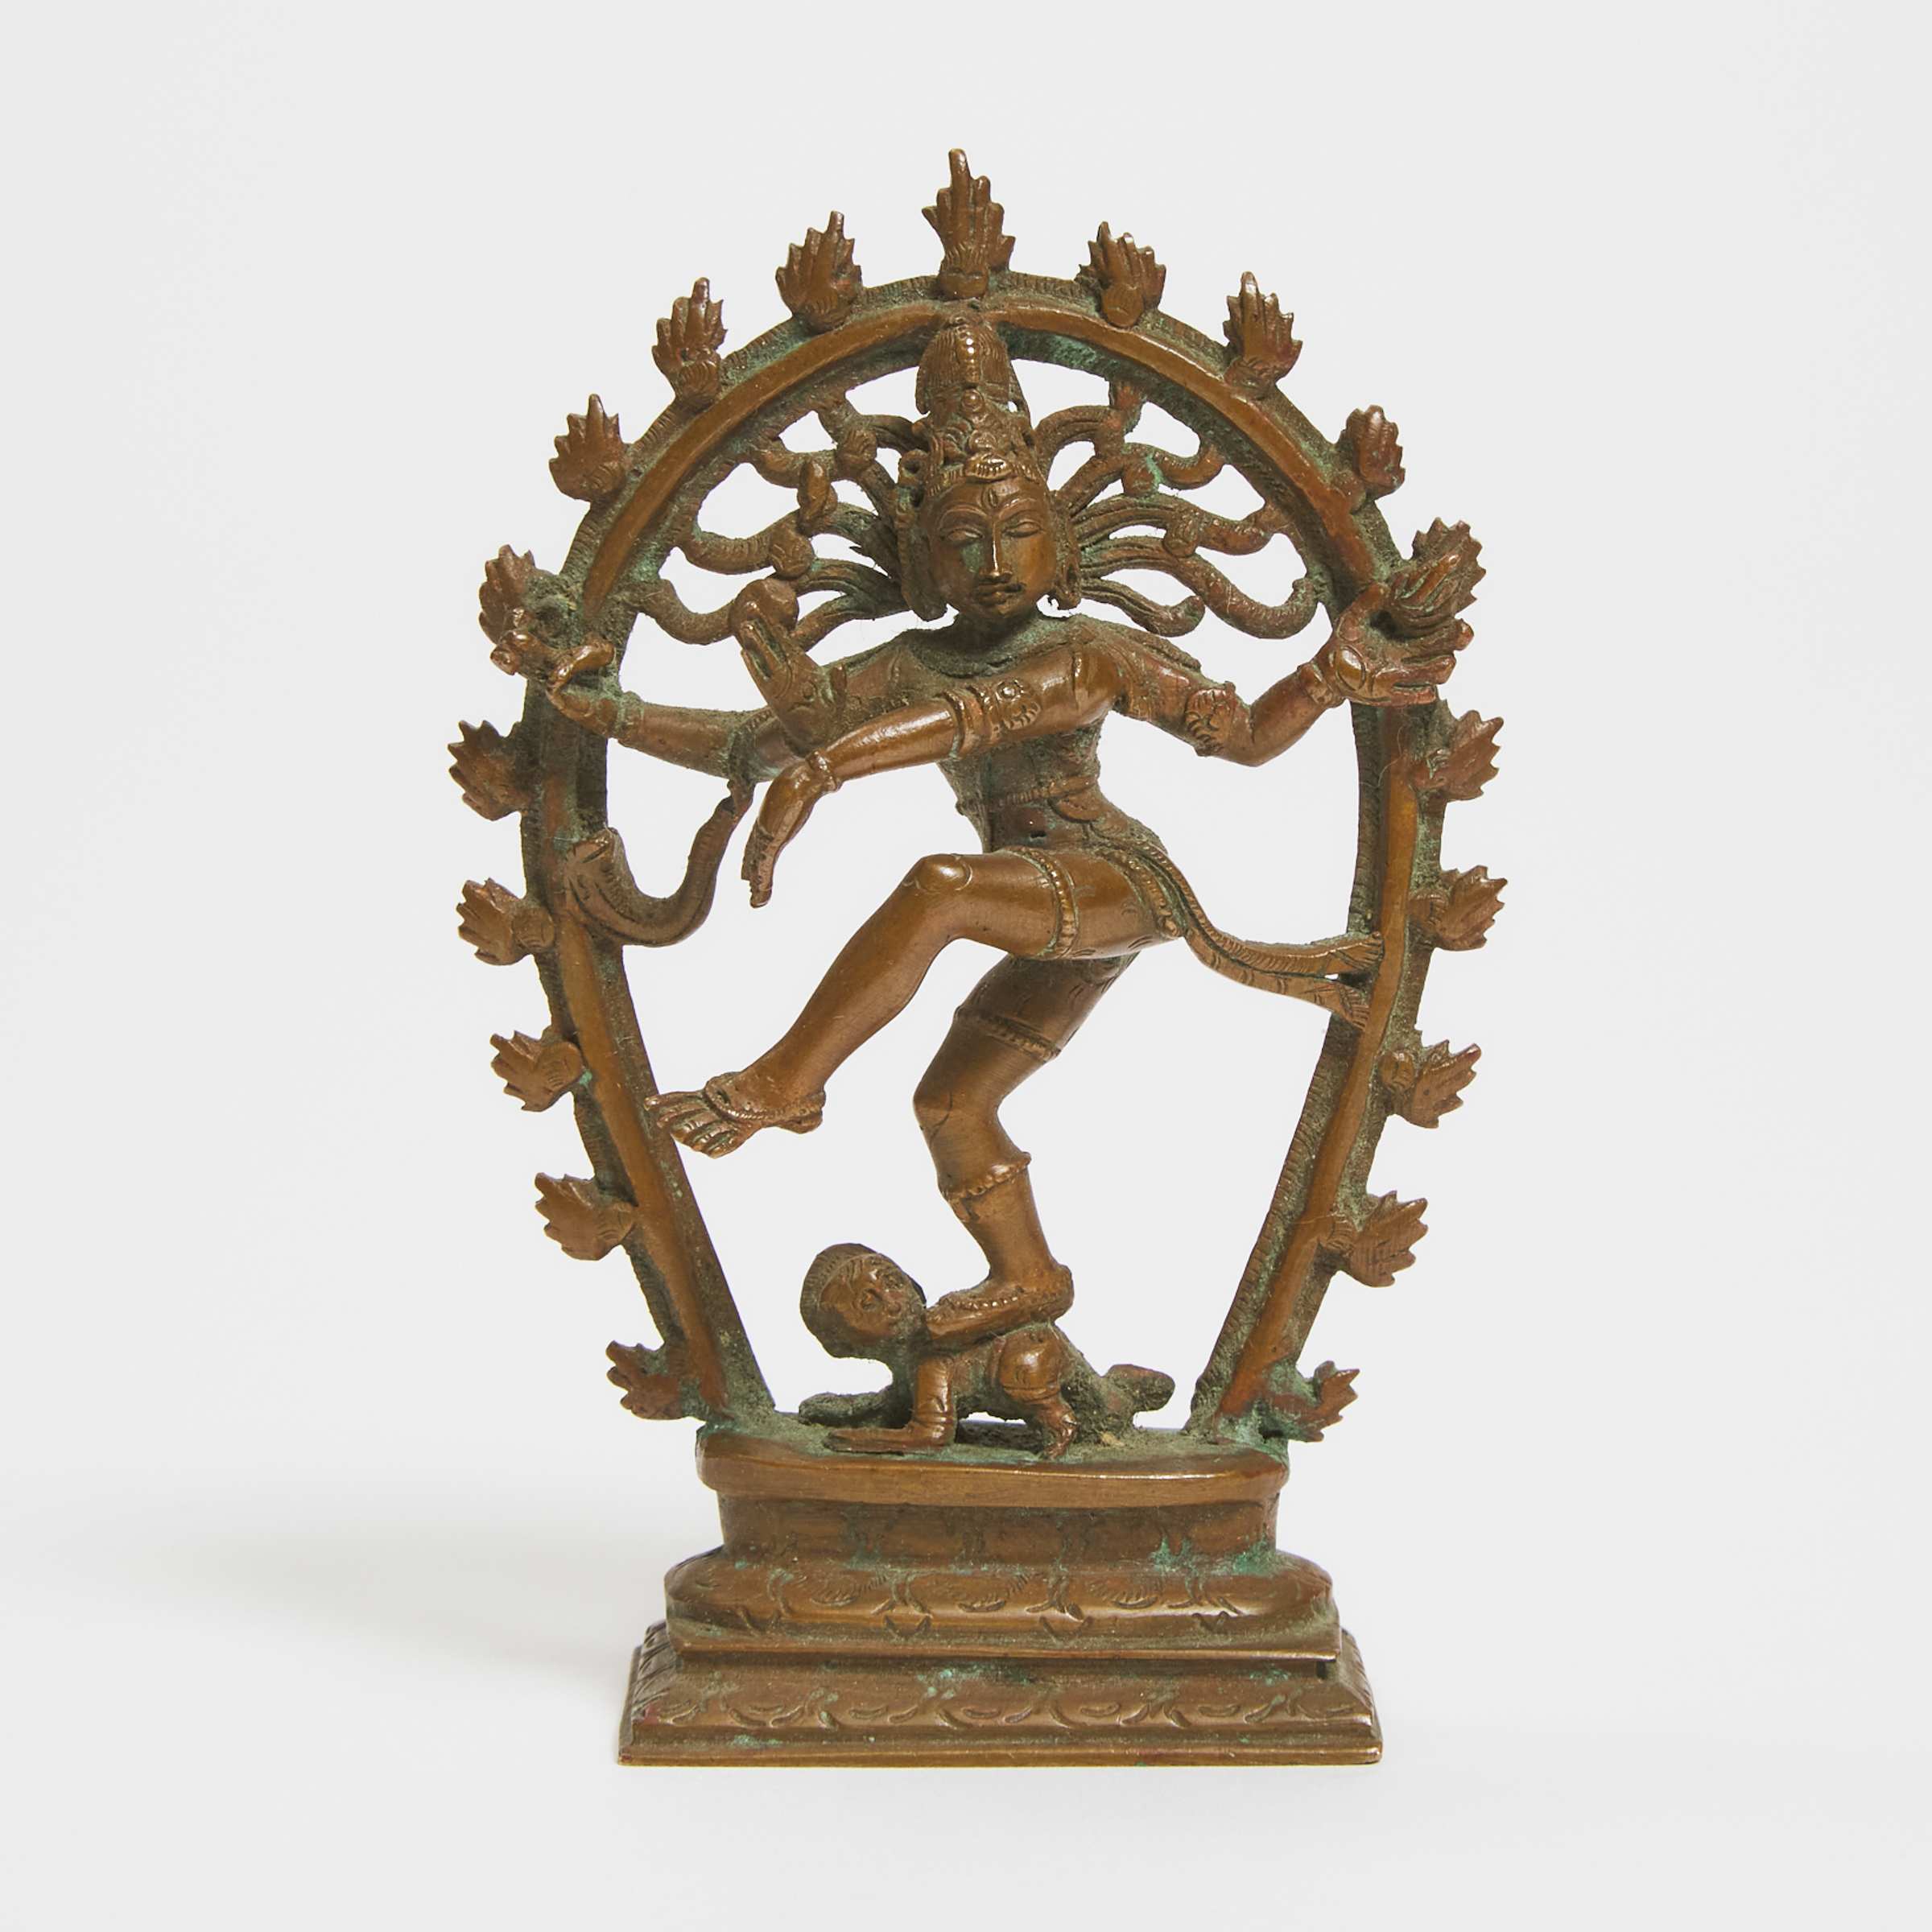 A Small Copper Figure of Shiva 3ab915